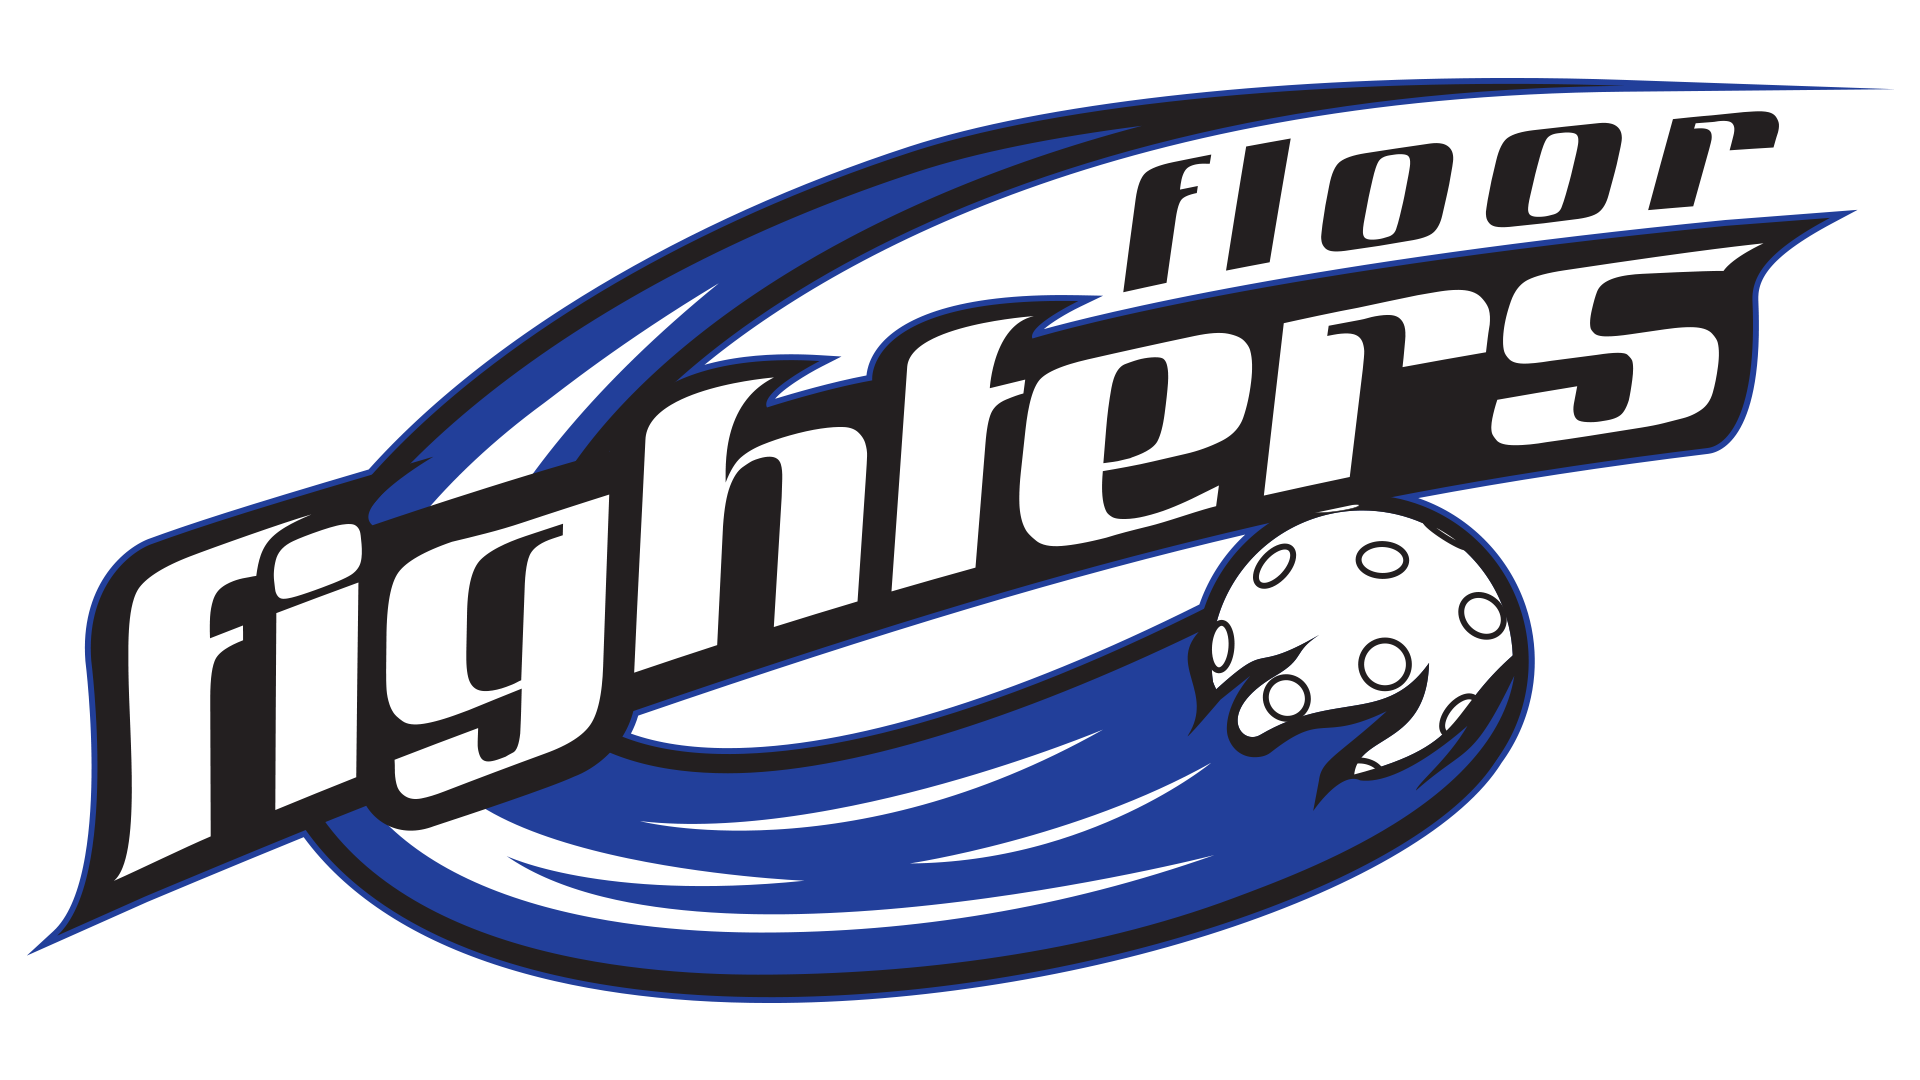 Floor Fighters Logo